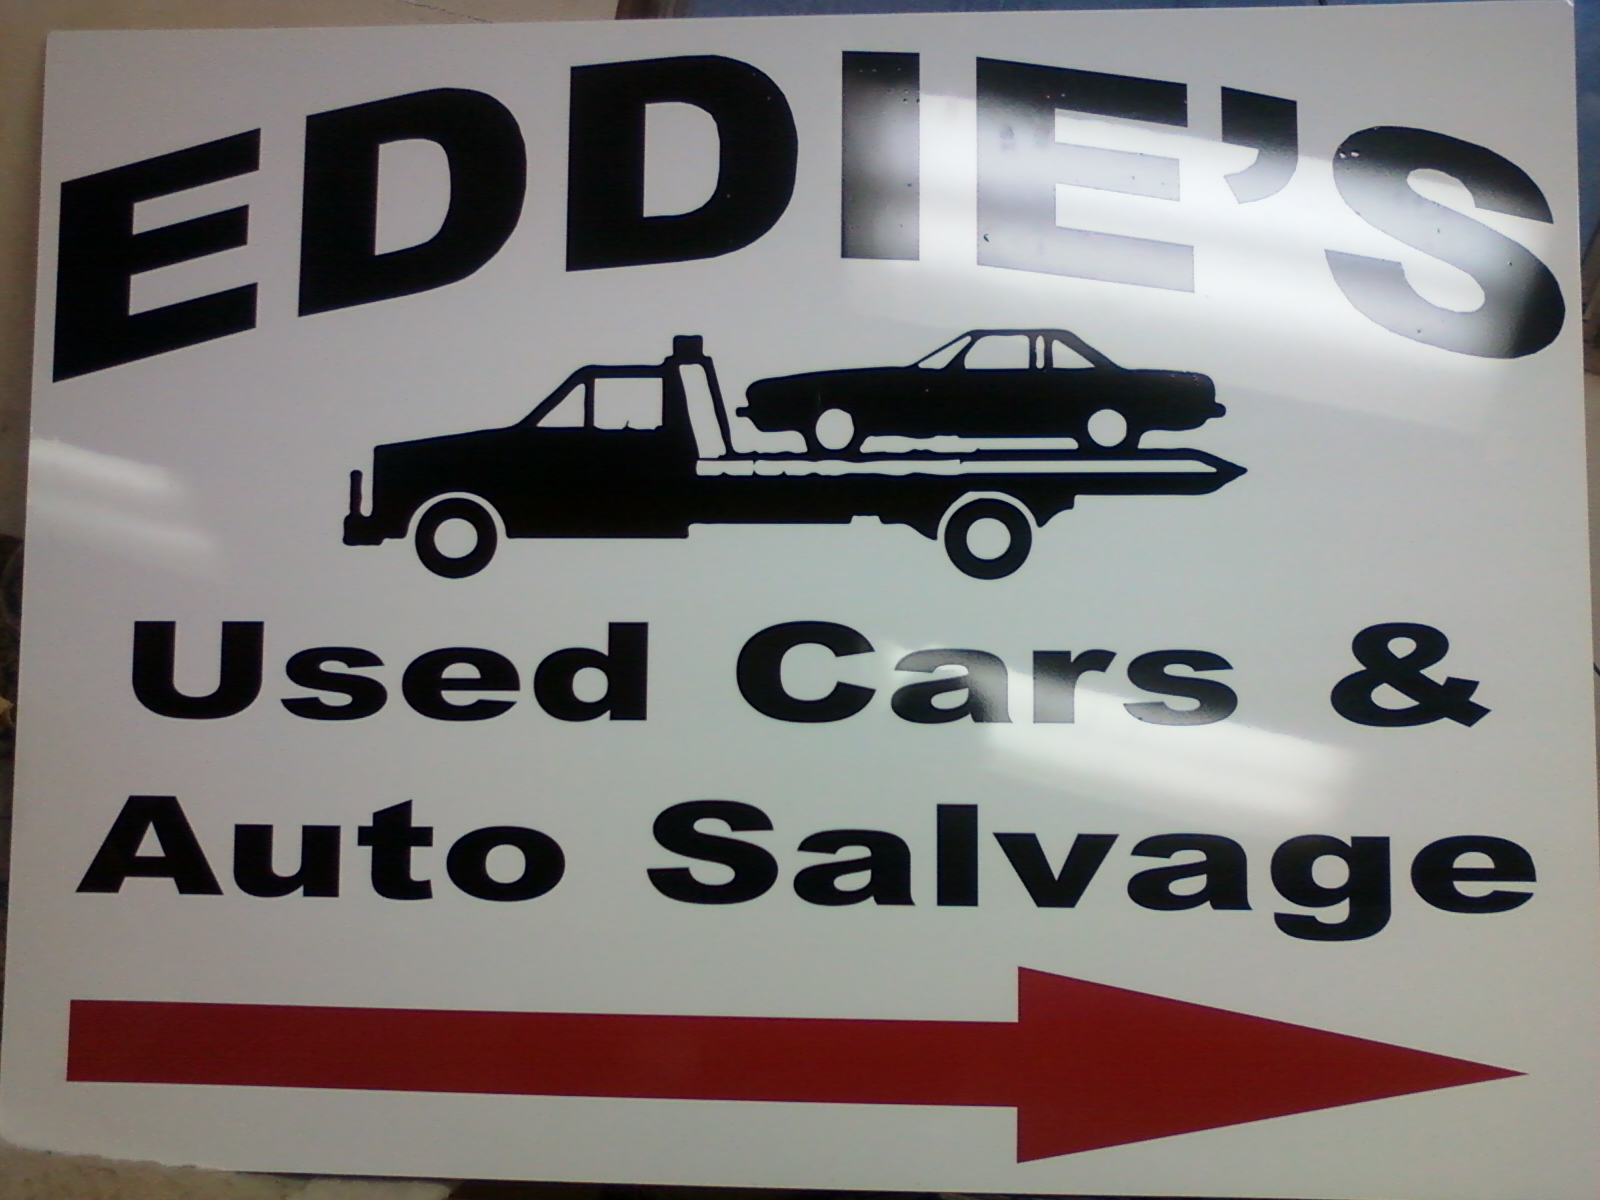 Eddie's Used Cars & Auto Salvage